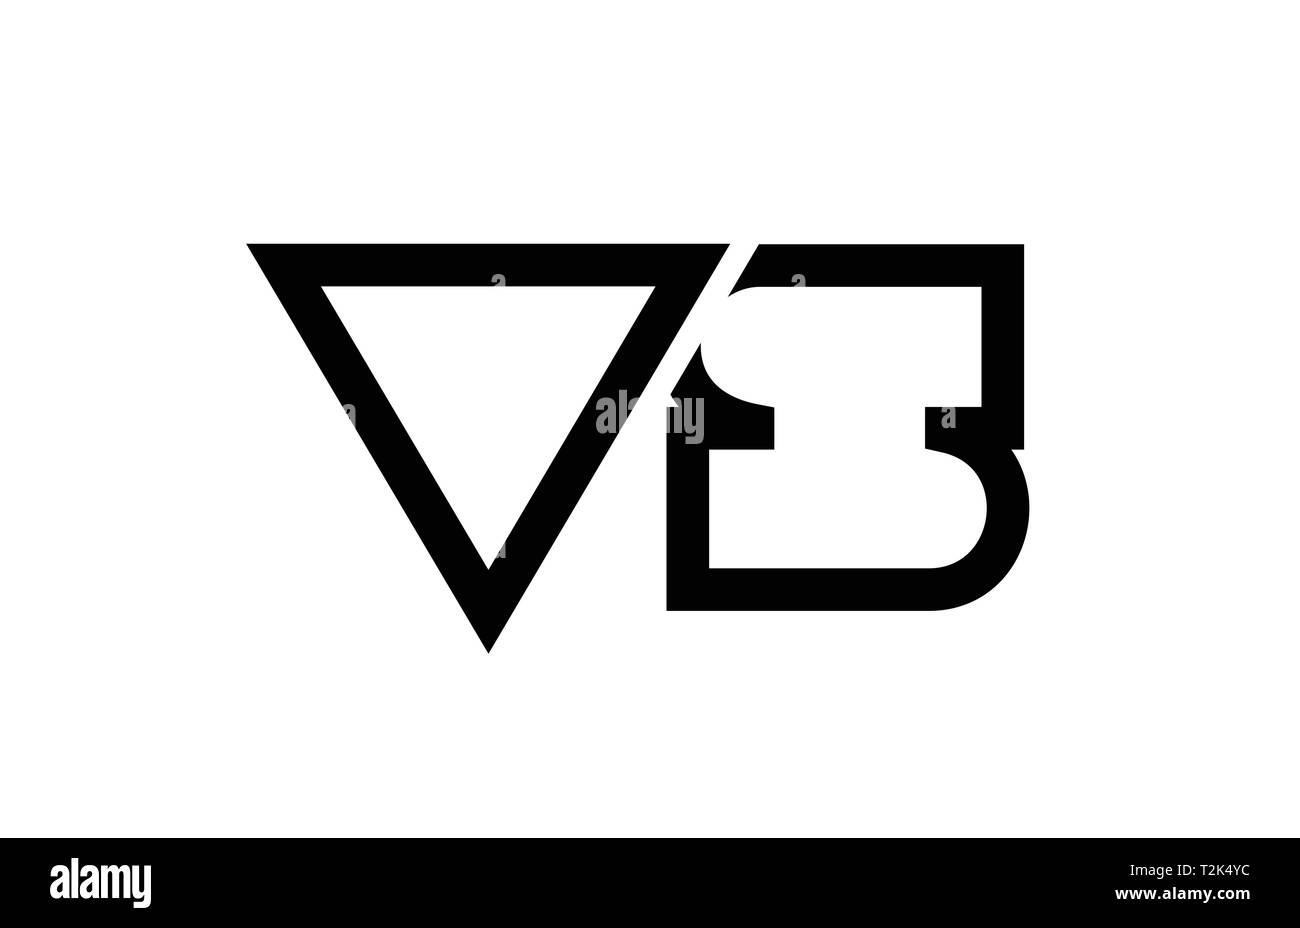 Schwarze und weiße Buchstaben logo Kombination vs v s Design geeignet für ein Unternehmen oder ein Geschäft Stock Vektor